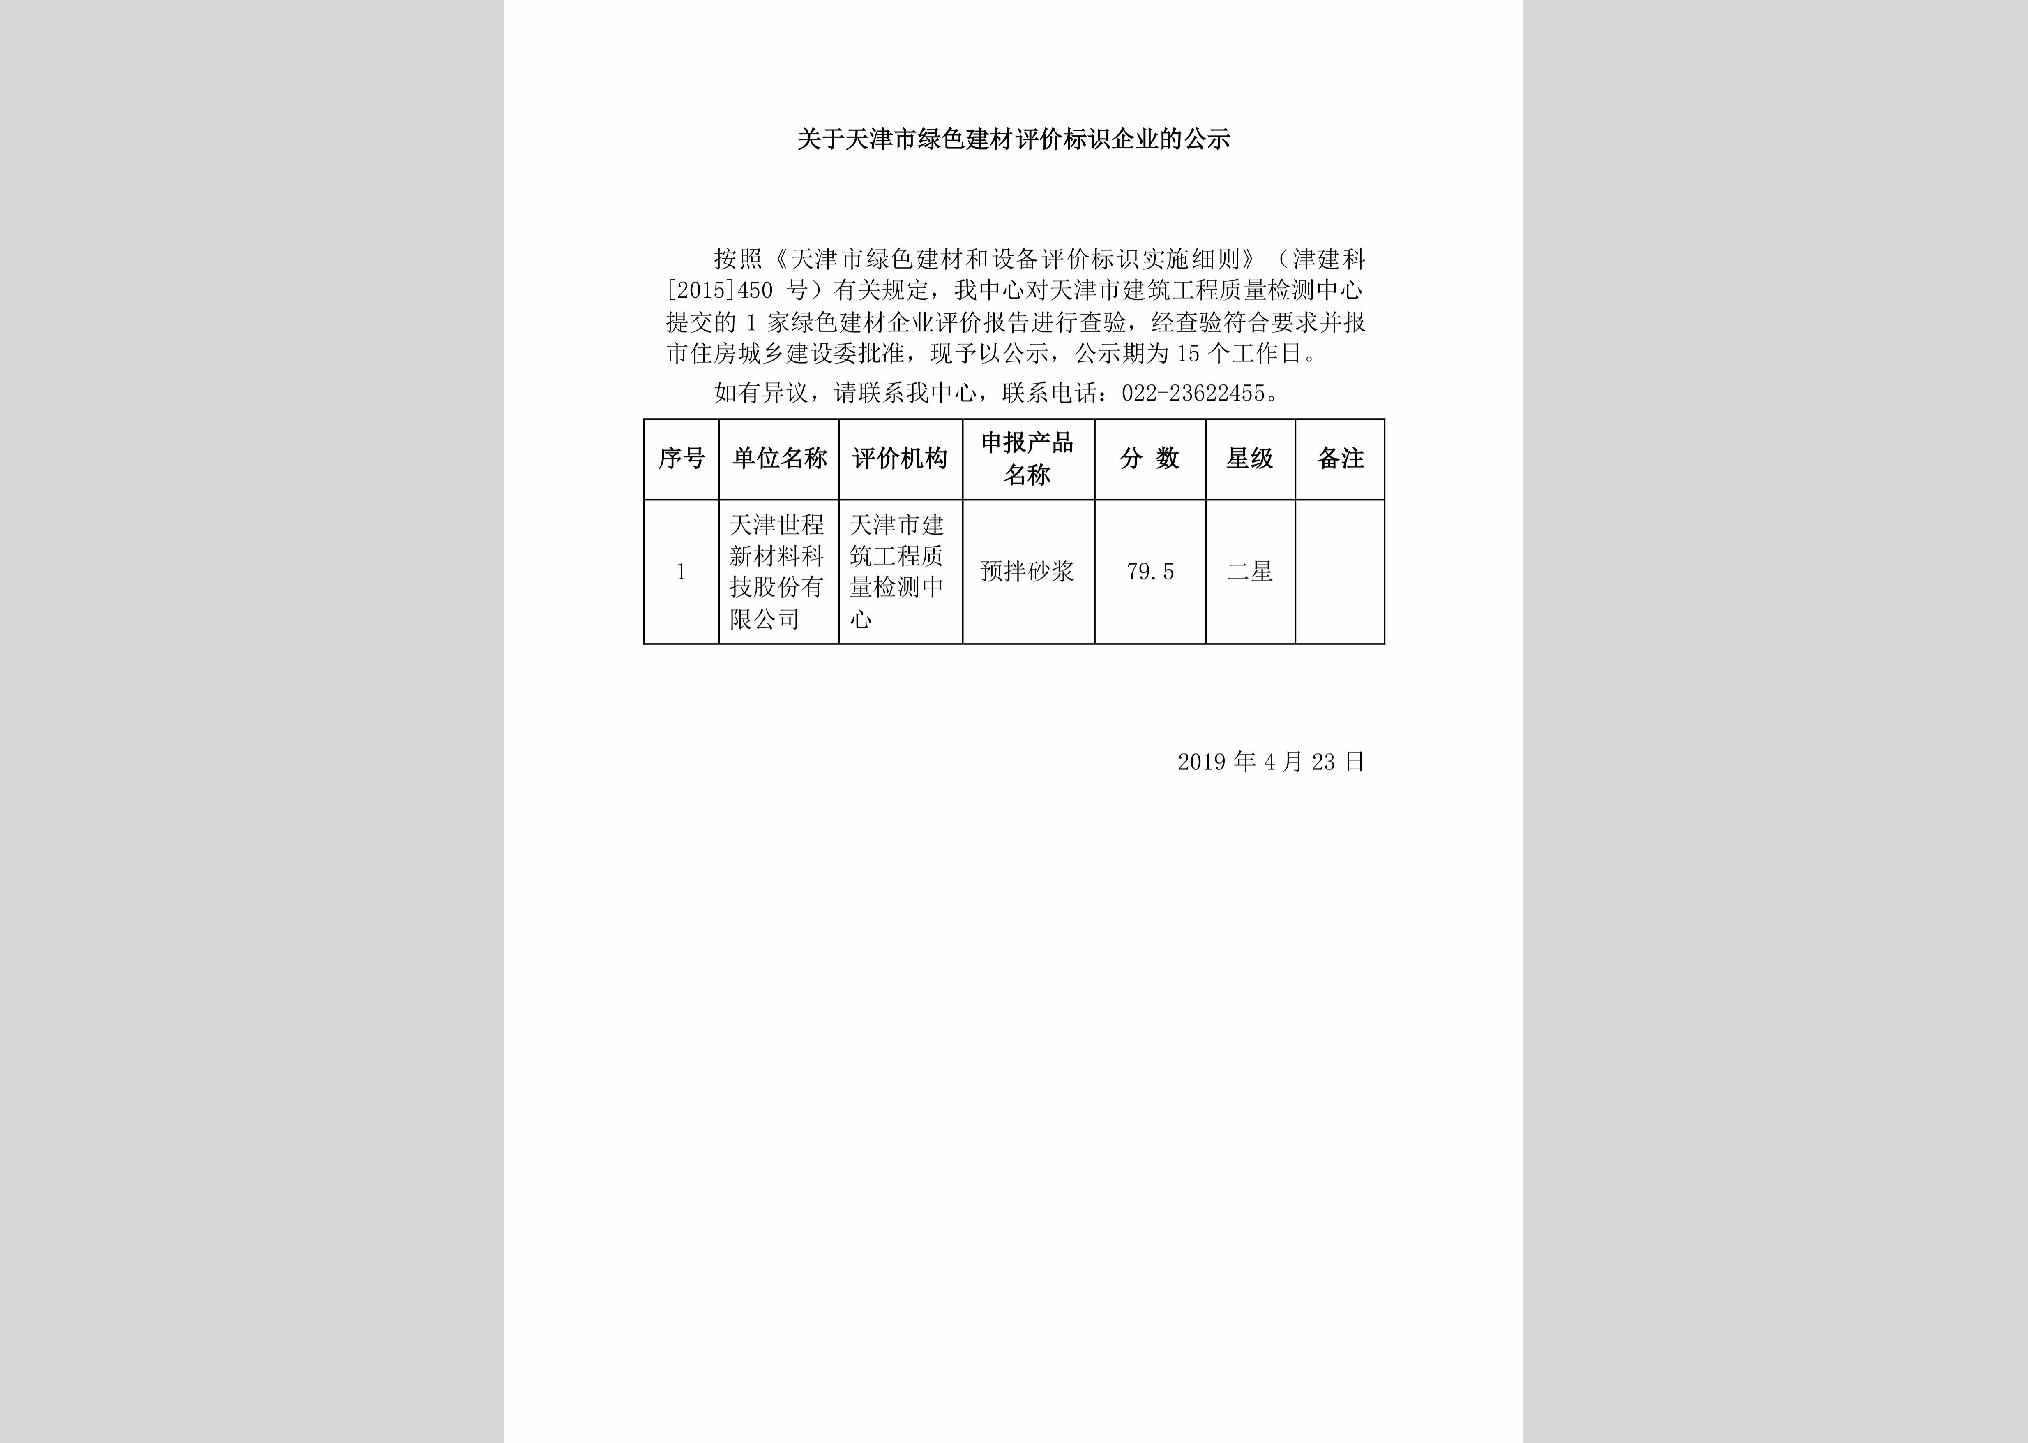 TJ-JCPJBSQY-2019：关于天津市绿色建材评价标识企业的公示